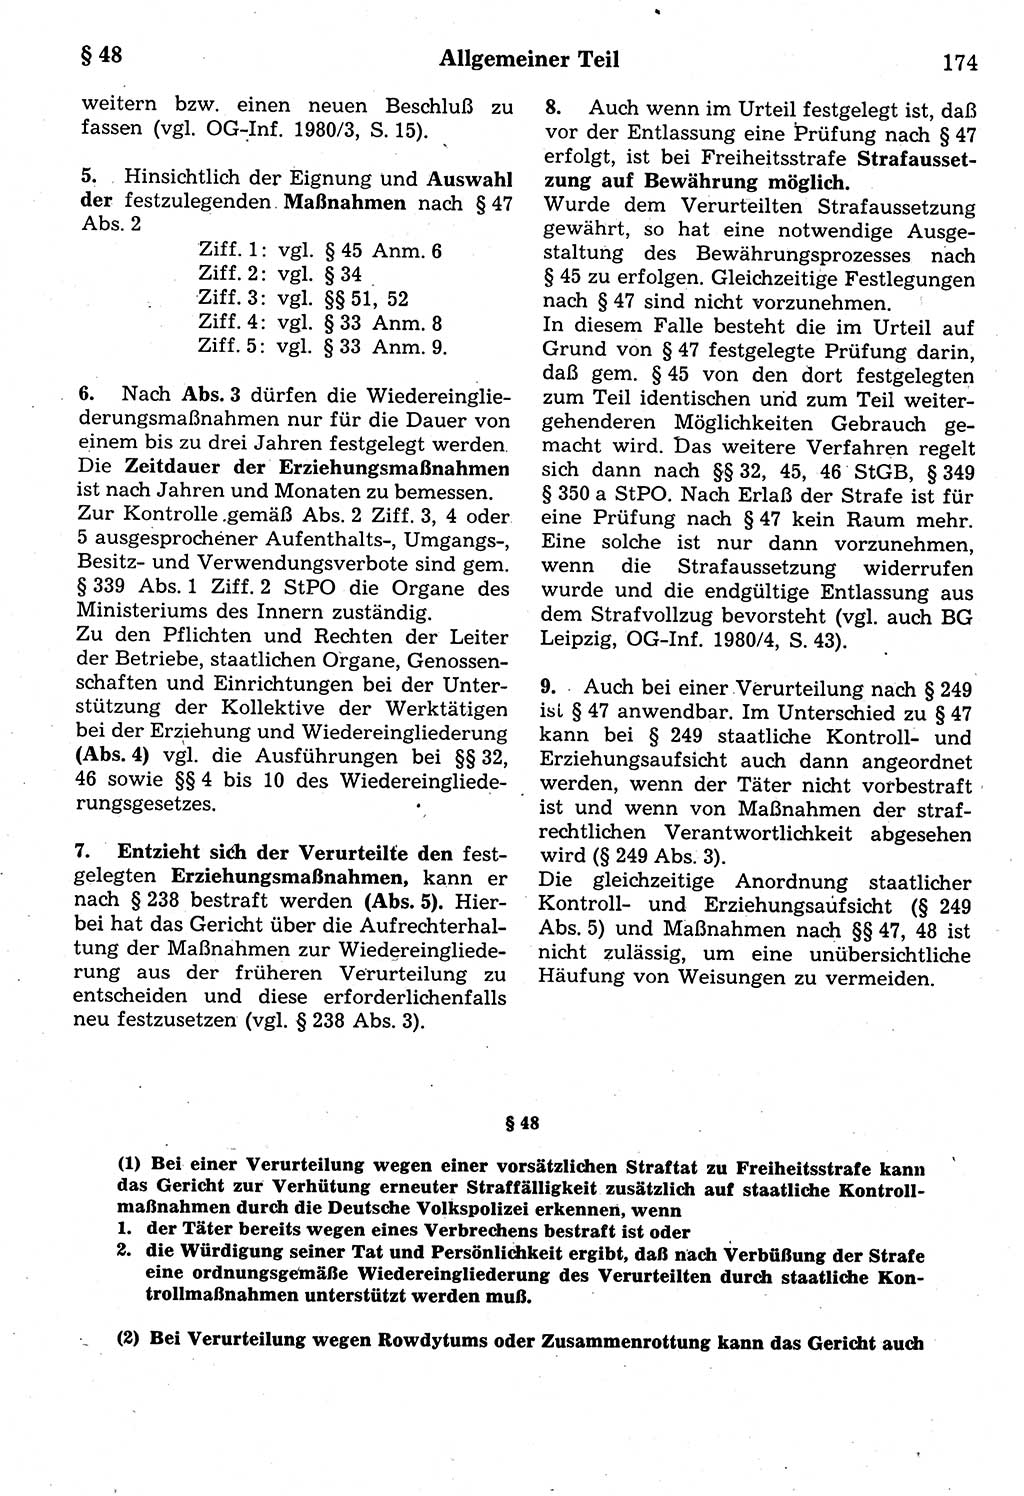 Strafrecht der Deutschen Demokratischen Republik (DDR), Kommentar zum Strafgesetzbuch (StGB) 1987, Seite 174 (Strafr. DDR Komm. StGB 1987, S. 174)